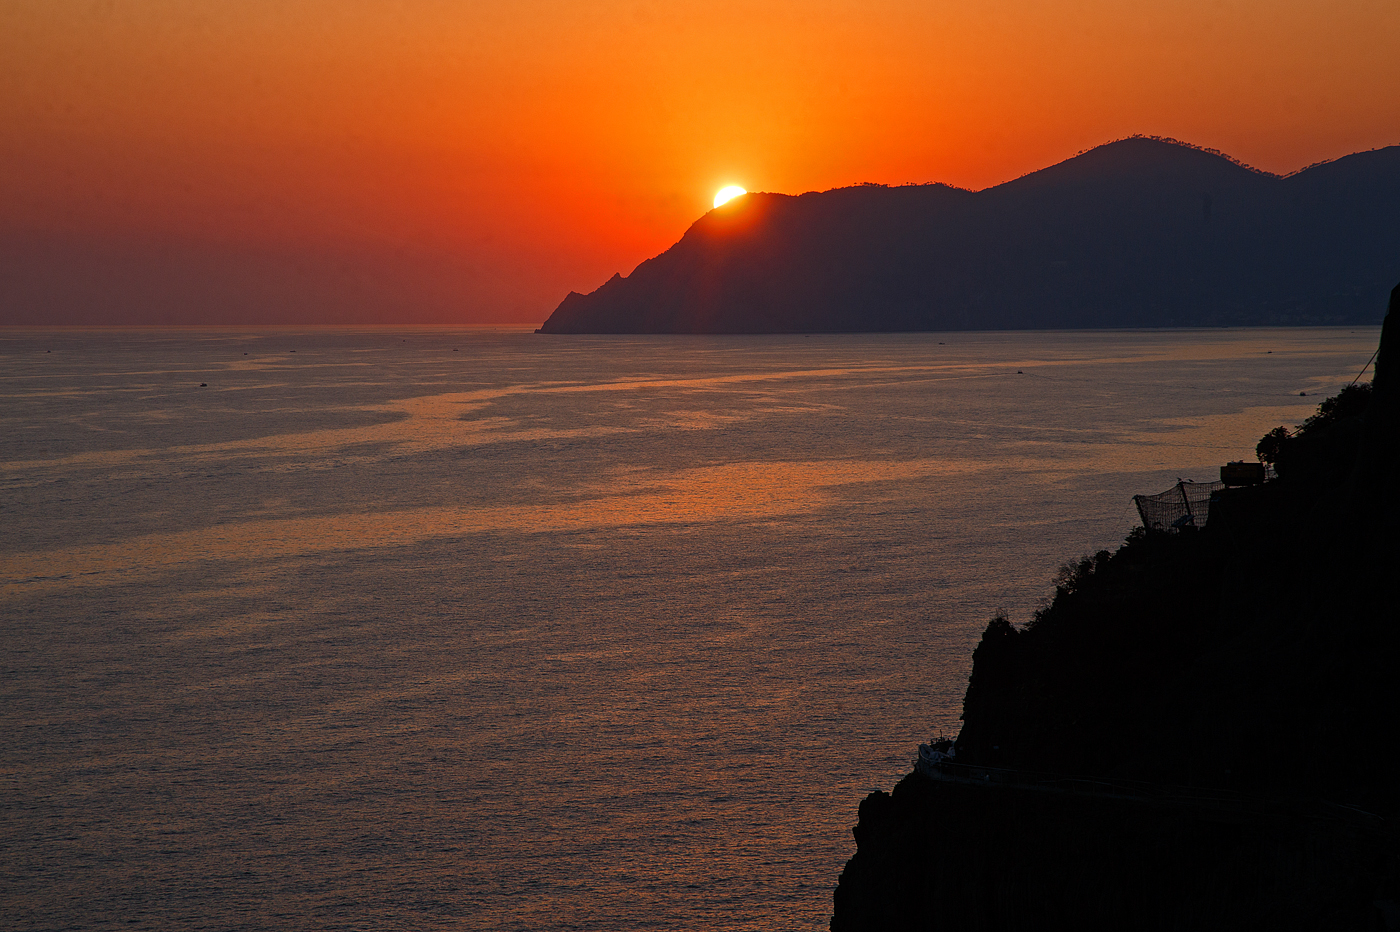 Nun ist die Sonne fast verschwunden......
Riomaggiore (Cinque Terre) am 21.07.2022.
